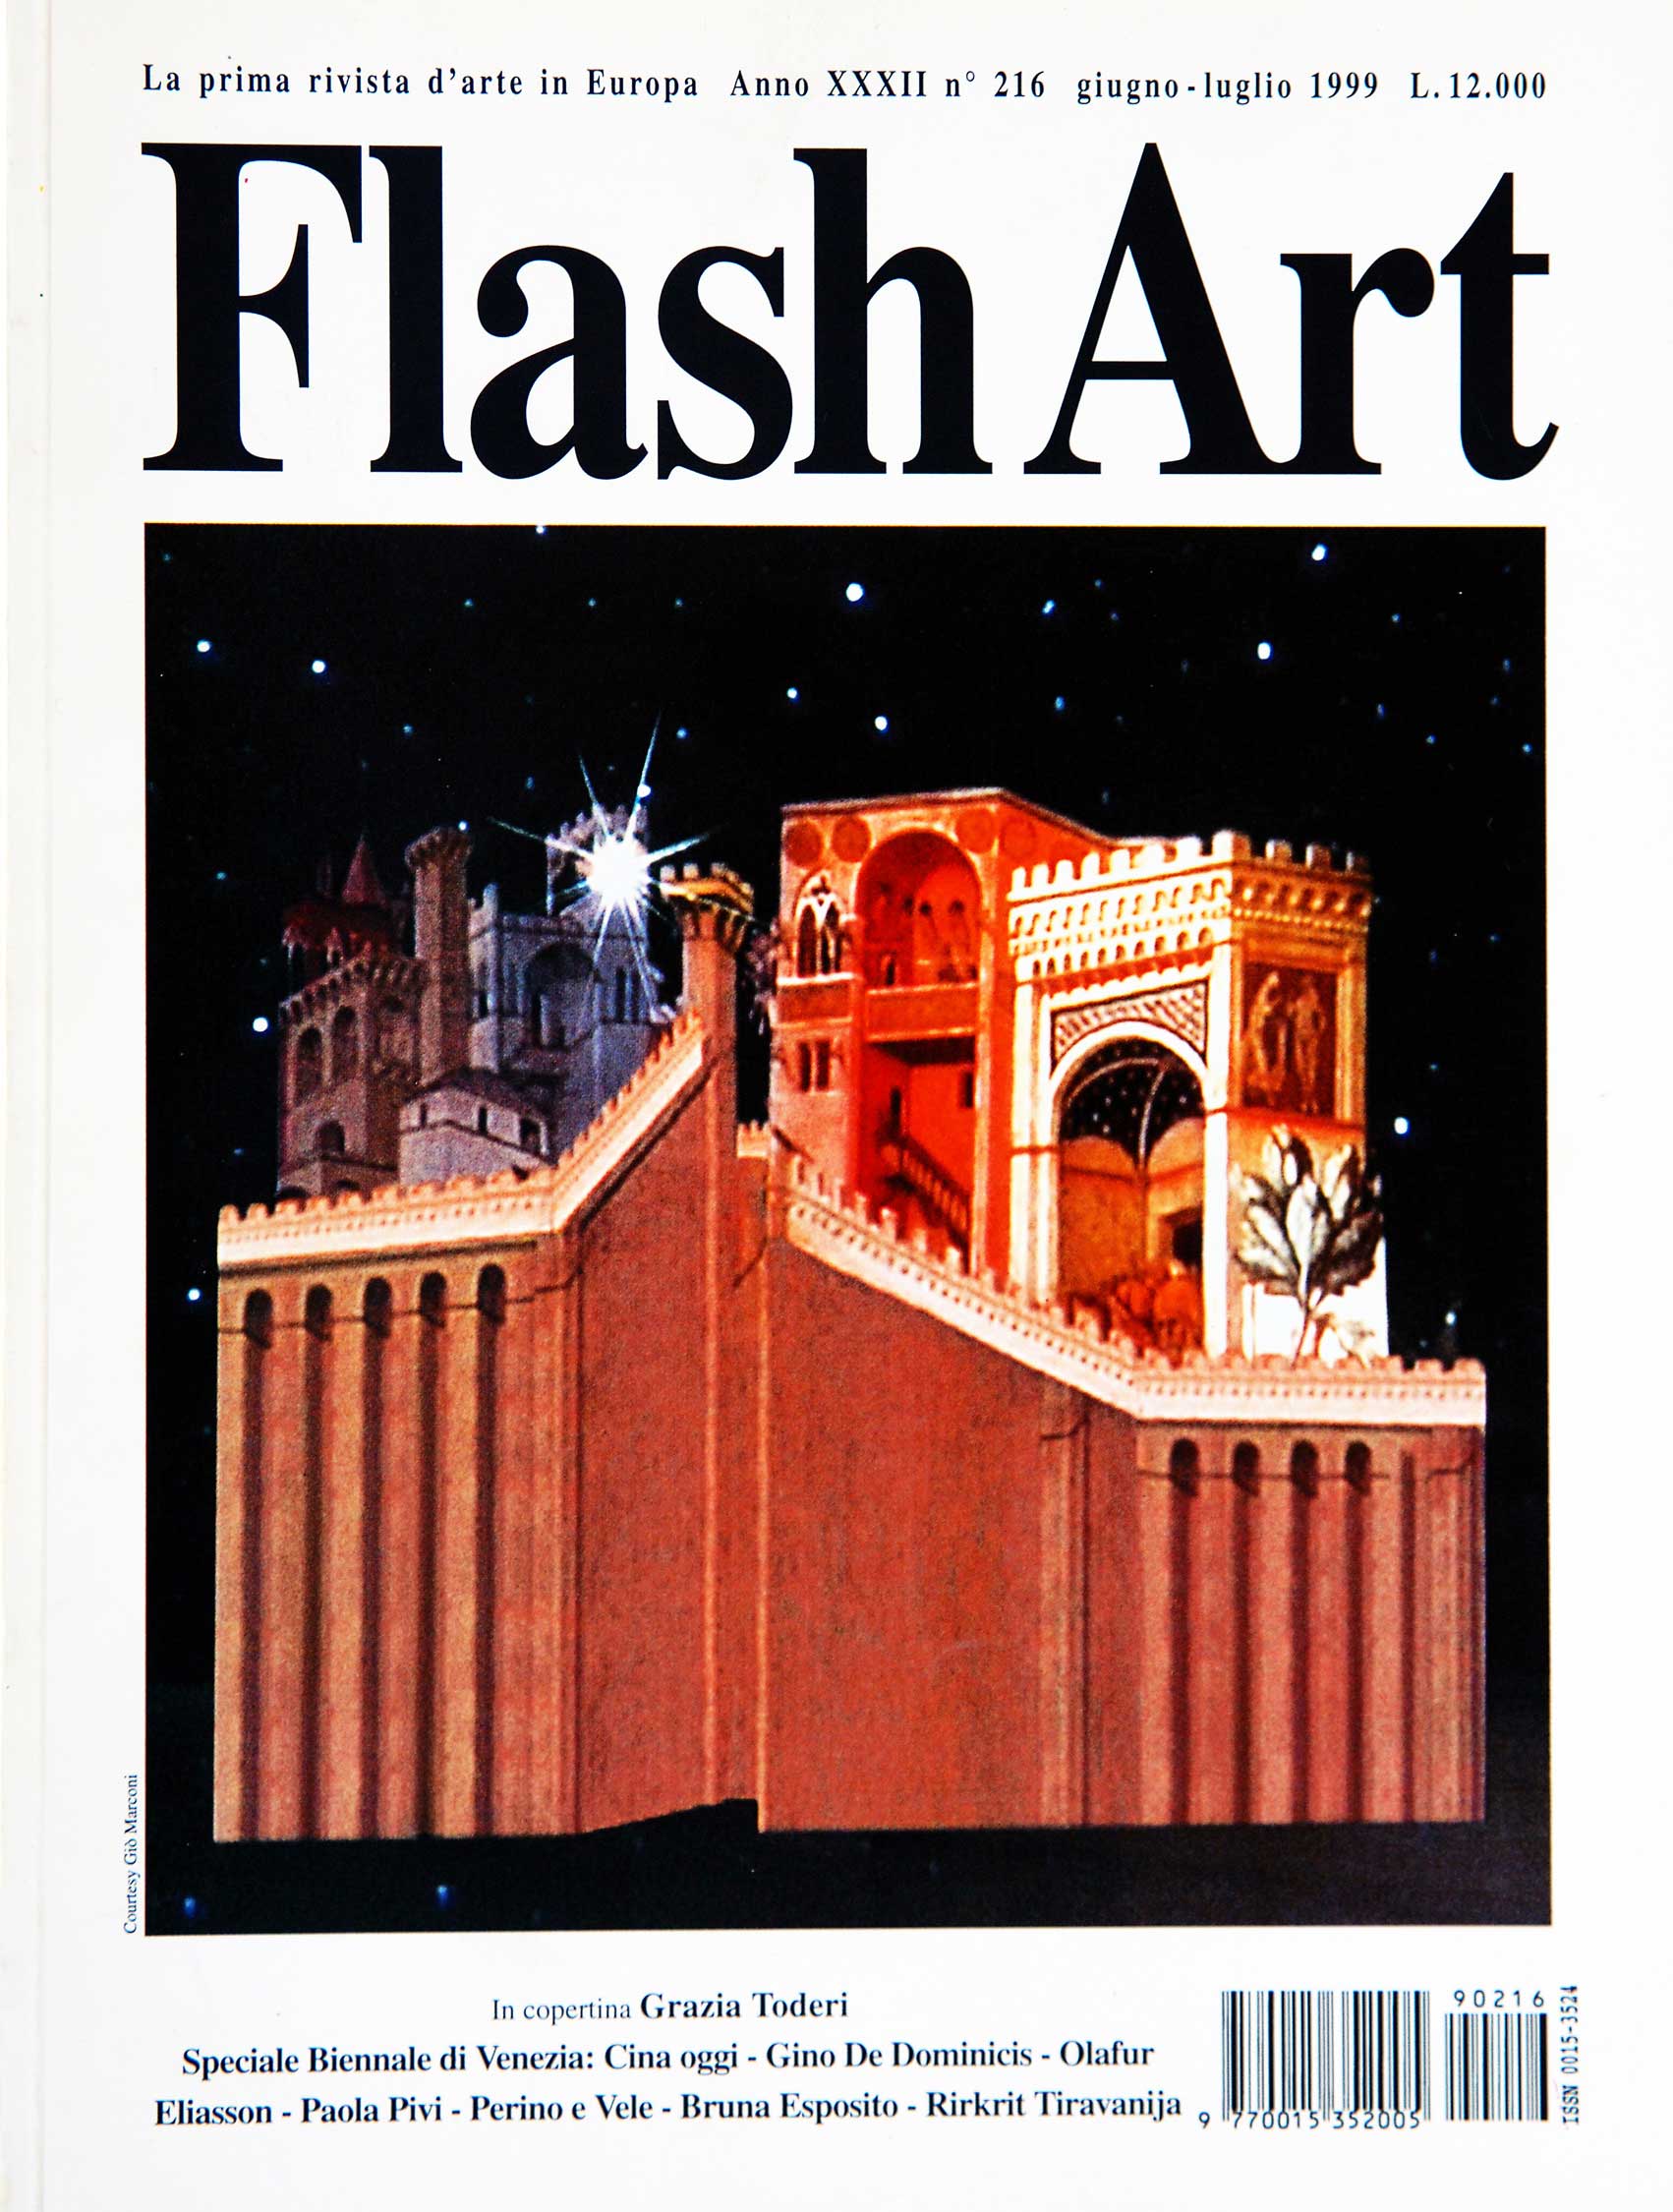 FLASH ART - ED. G. POLITI - MILANO - 1999